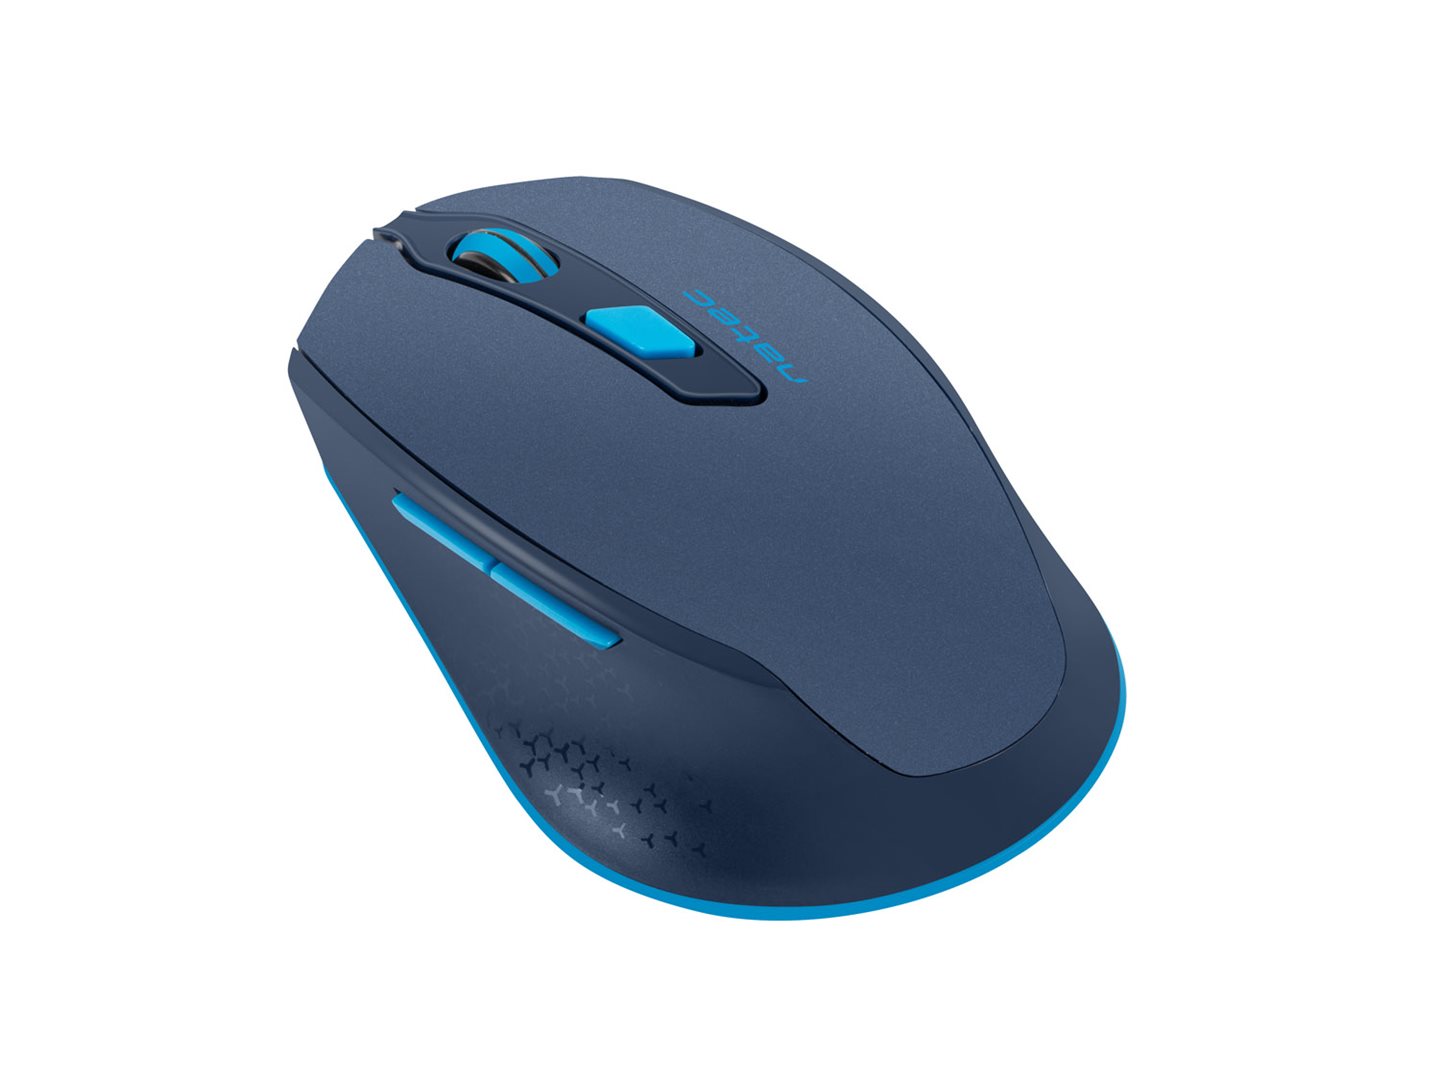 Tichá ergonomická myš Natec Siskin 2400 DPI, bezdrátová, modrá